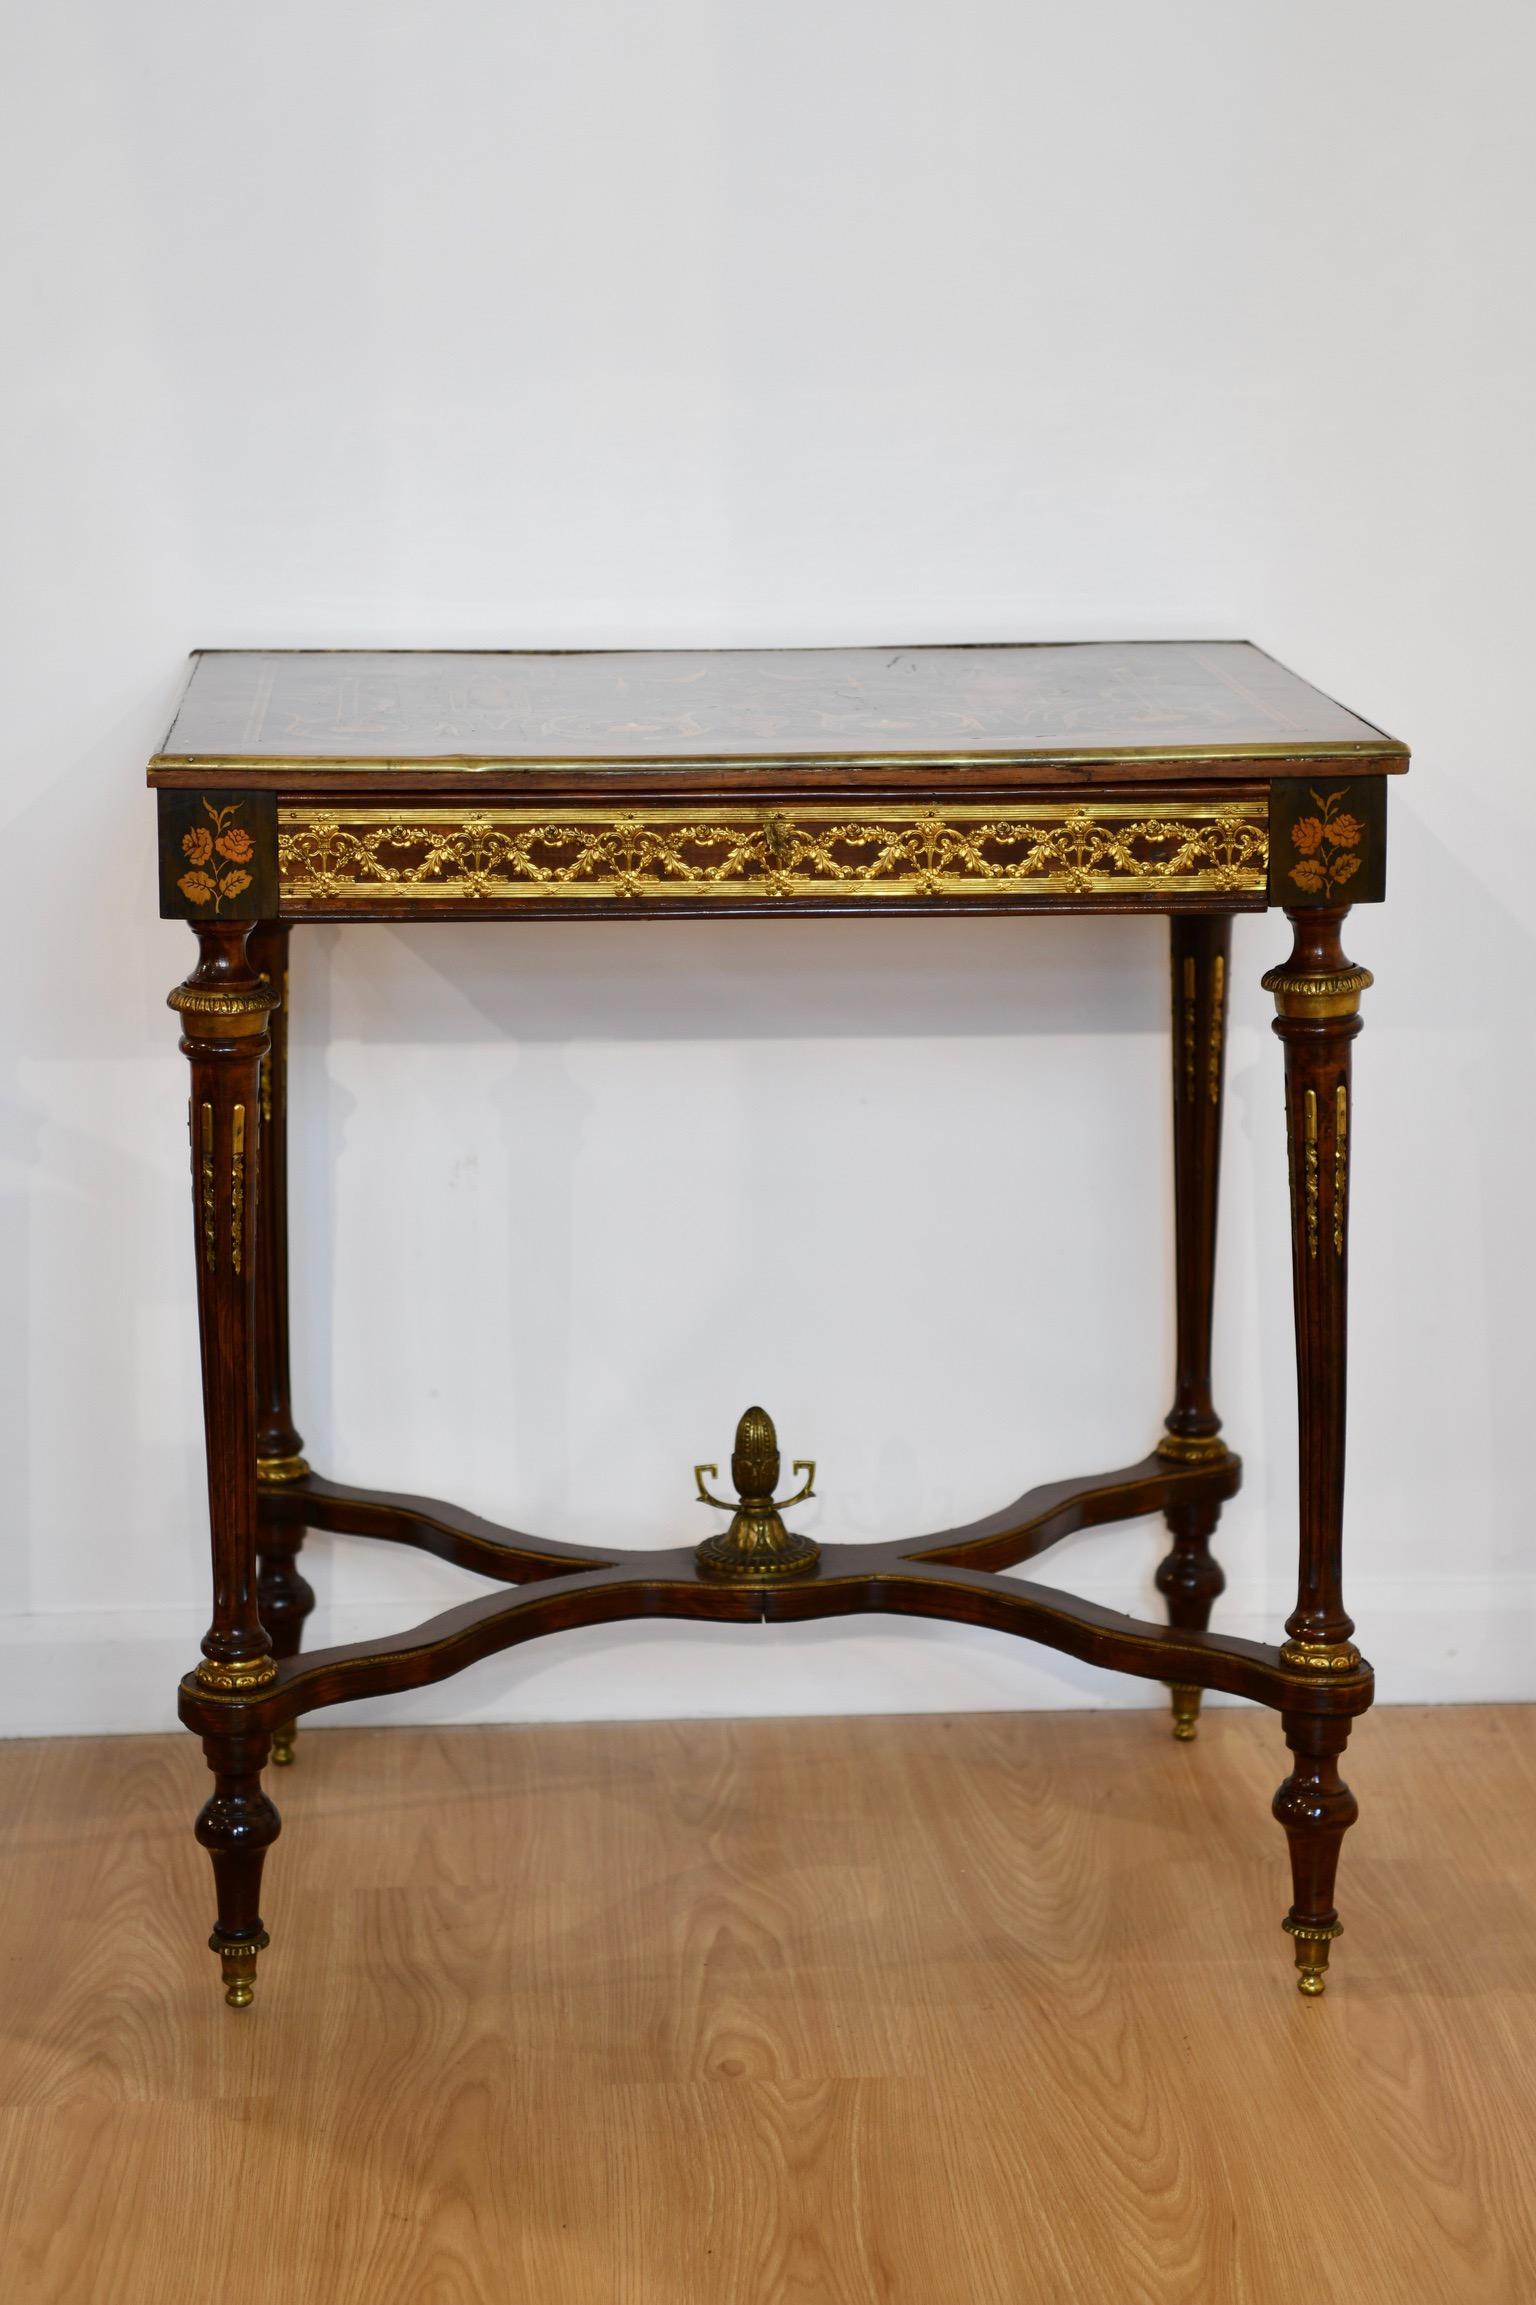 Table à écrire de style Louis XVI en marqueterie avec motif néoclassique et incrustation de nacre sur un tablier monté en bronze doré avec un seul tiroir. La table repose sur des pieds fuselés et cannelés, avec des pieds en forme de glands.